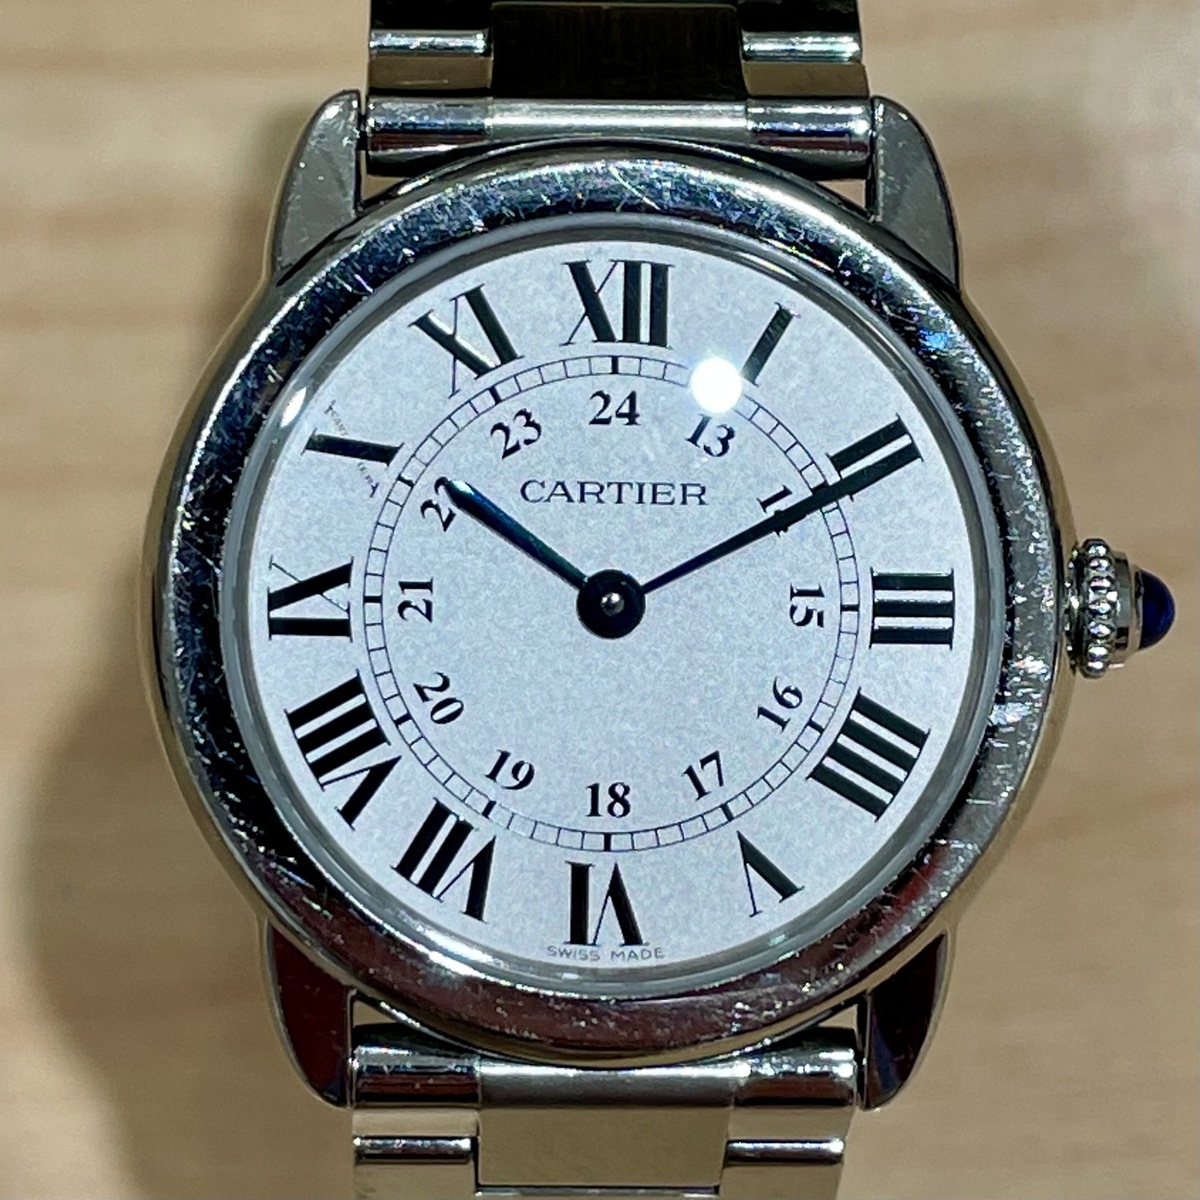 カルティエのS/S W6700155 ロンド ソロ ドゥ カルティエ クオーツ腕時計の買取実績です。